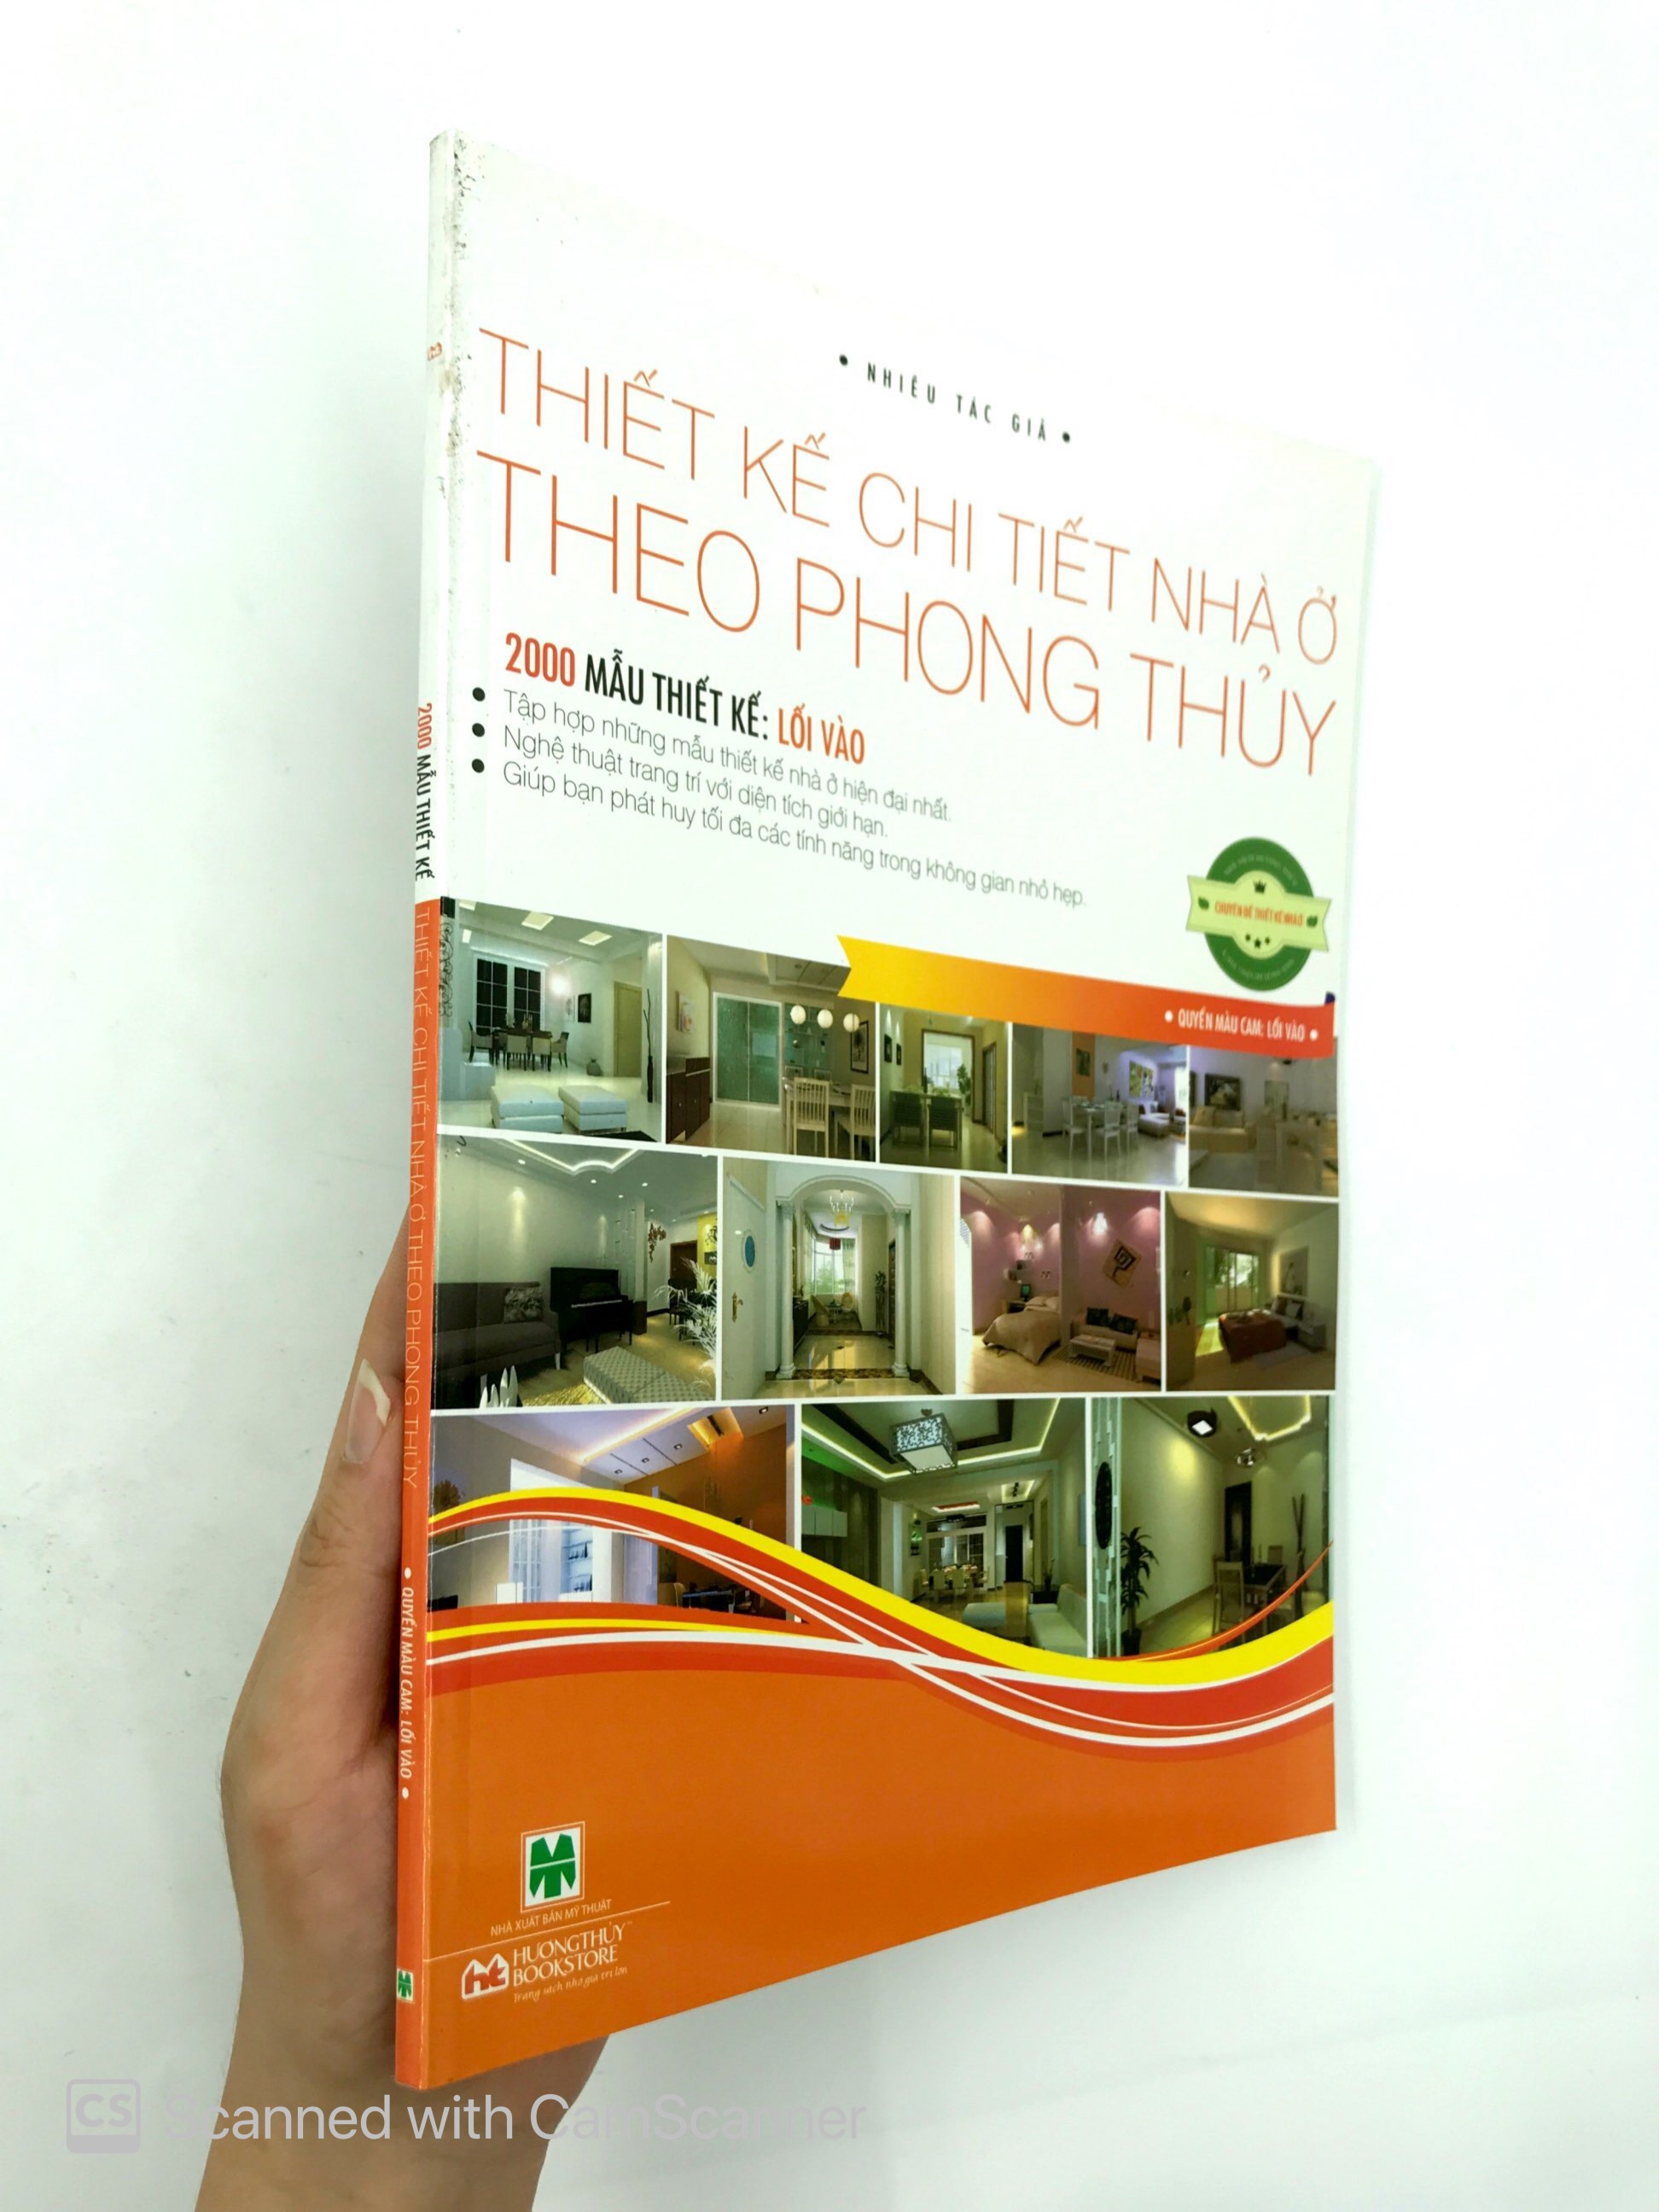 Thiết Kế Chi Tiết Nhà Ở Theo Phong Thủy - 2000 Mẫu Thiết Kế: Lối Vào PDF